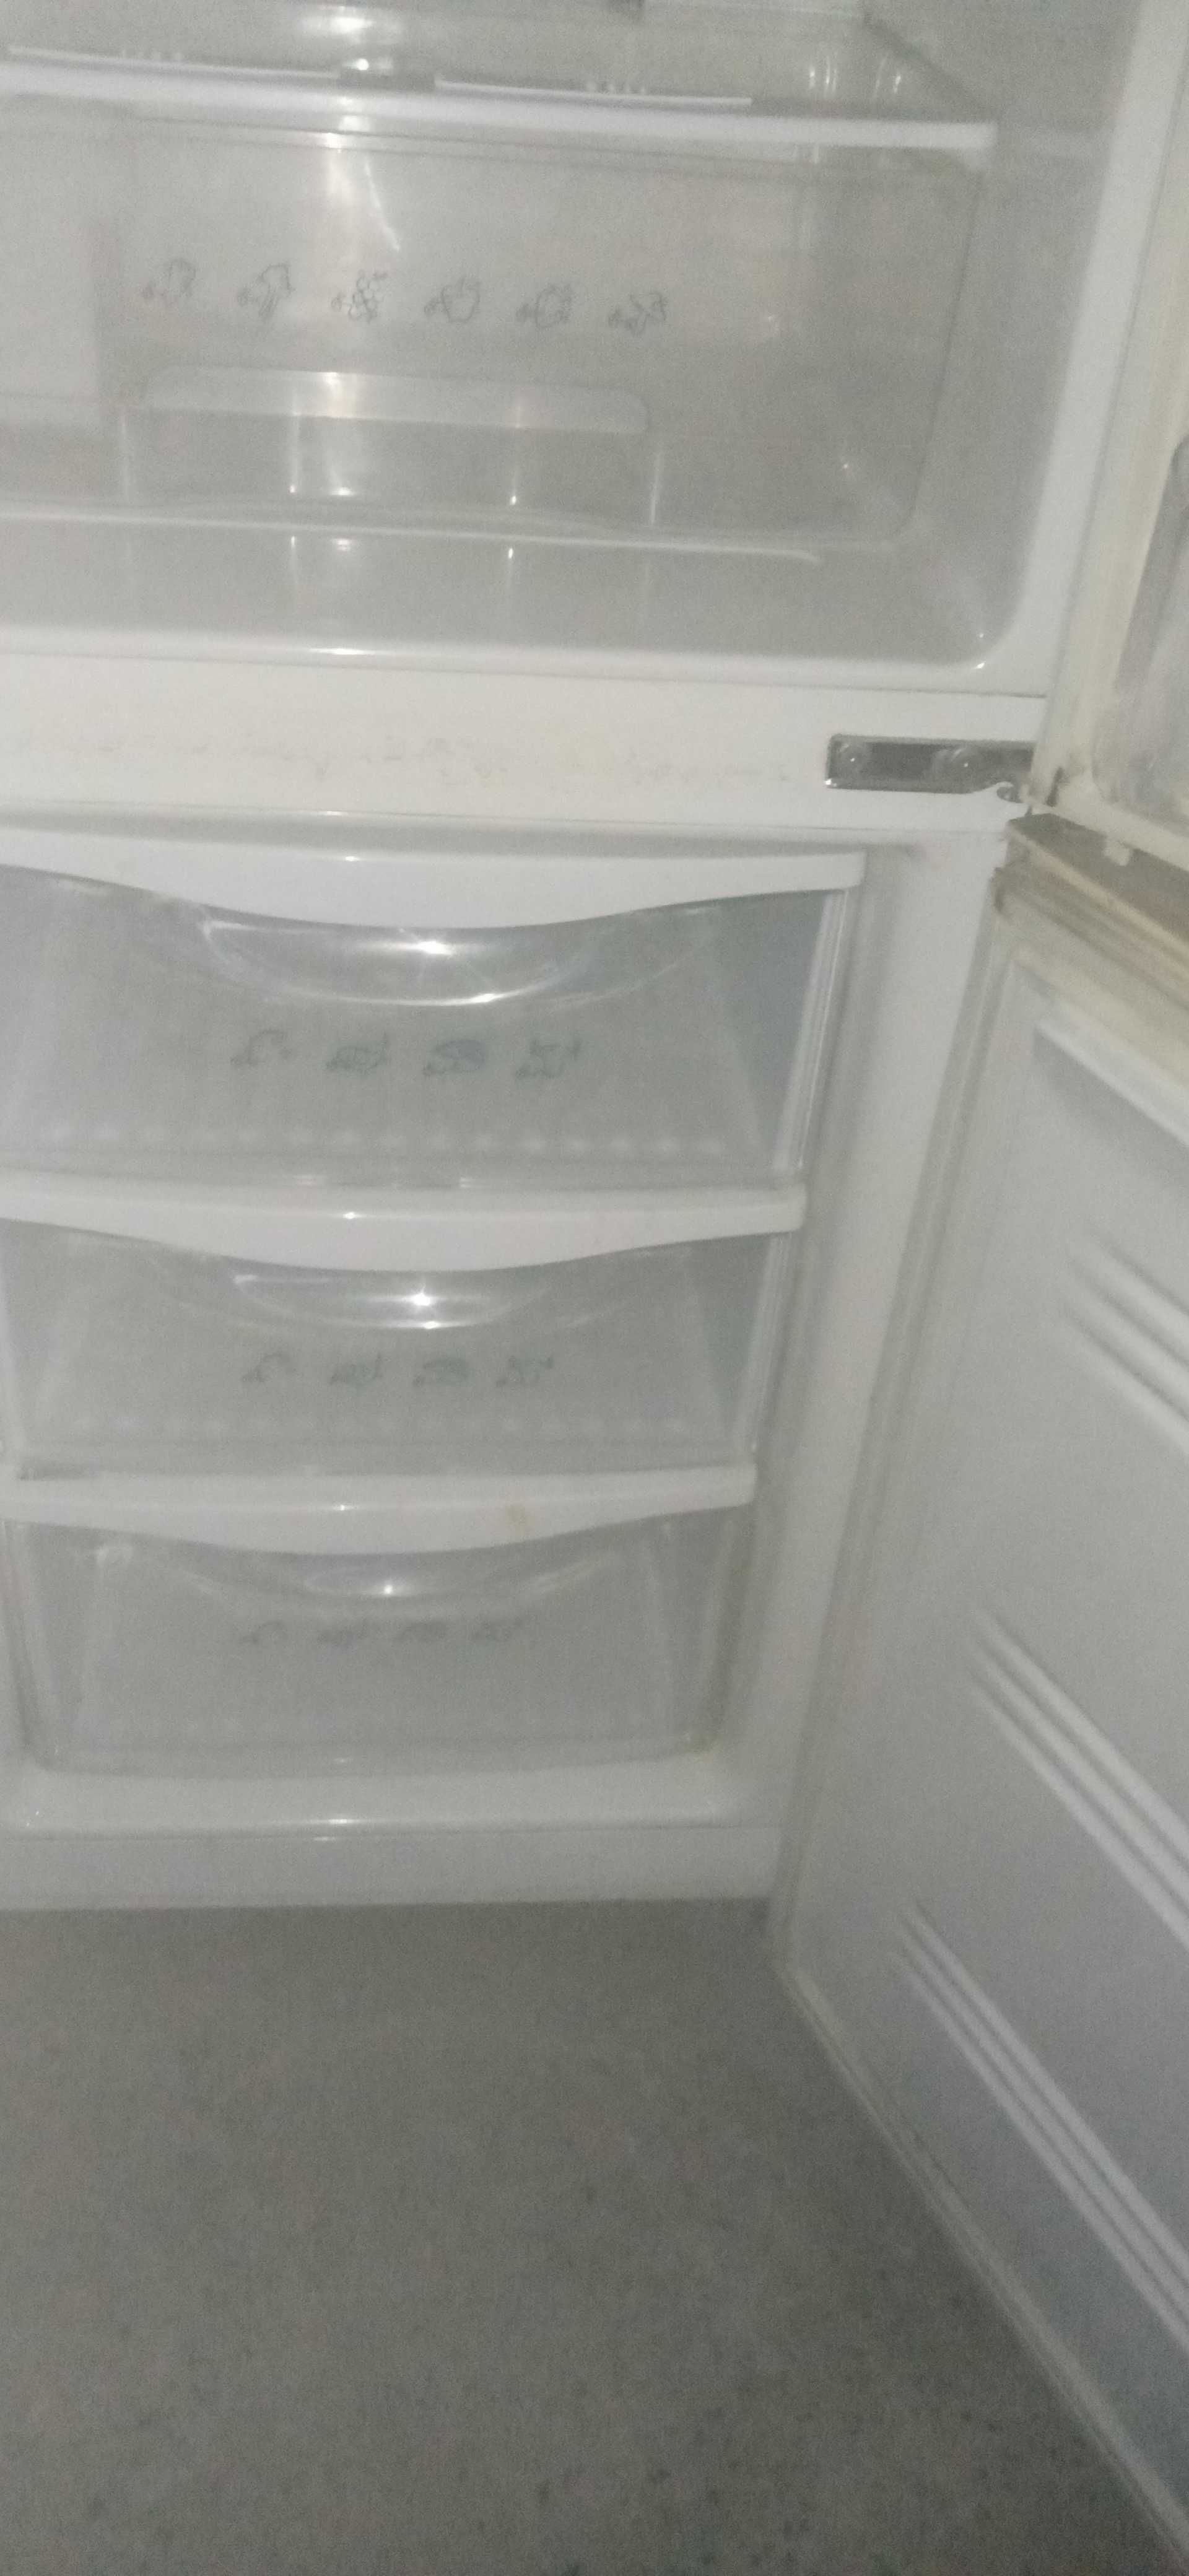 Продам холодильник марки Stinol и Samsung